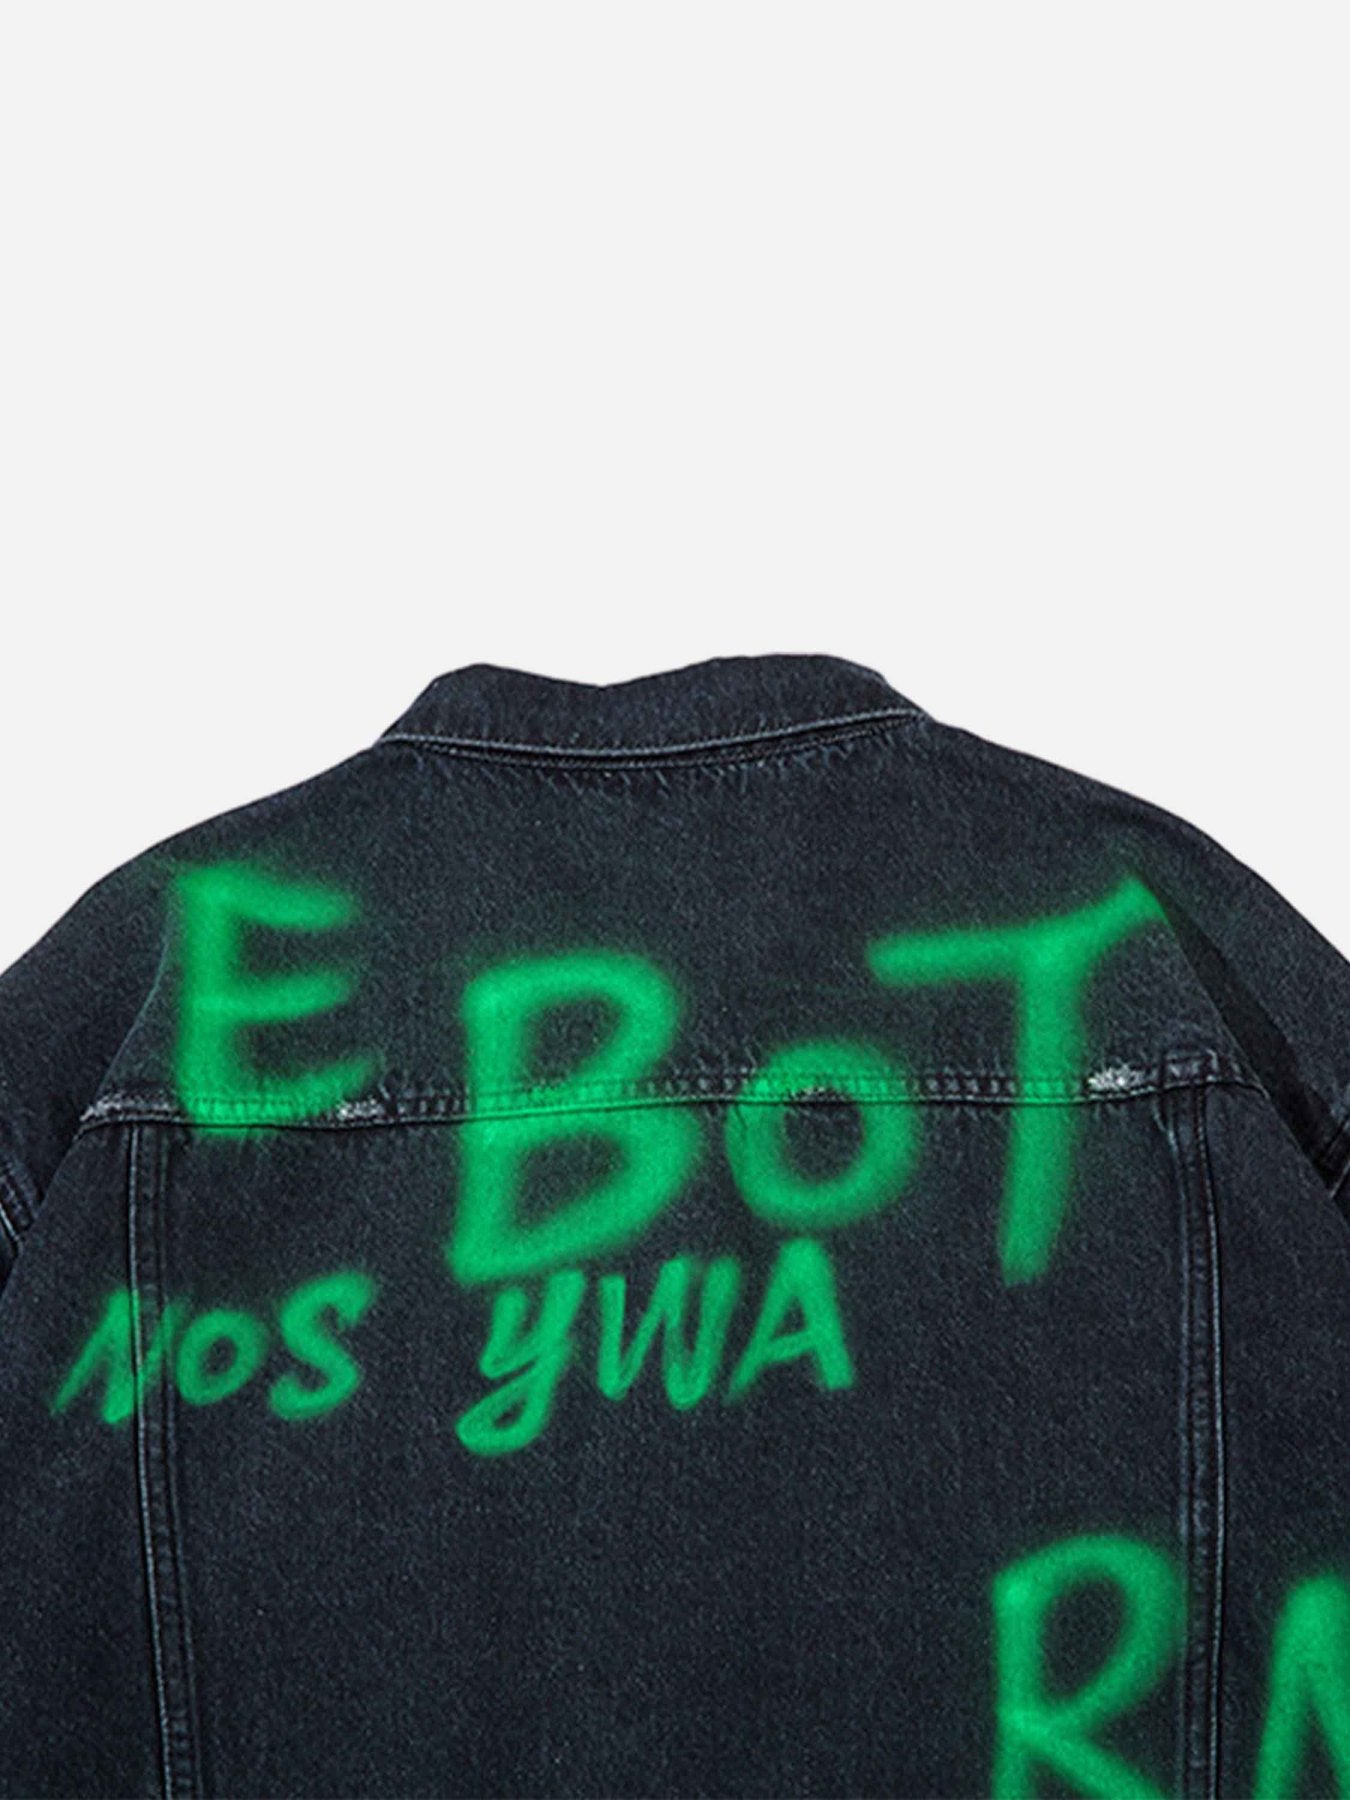 Thesupermade Hip Hop Graffiti Lettered Denim Jacket